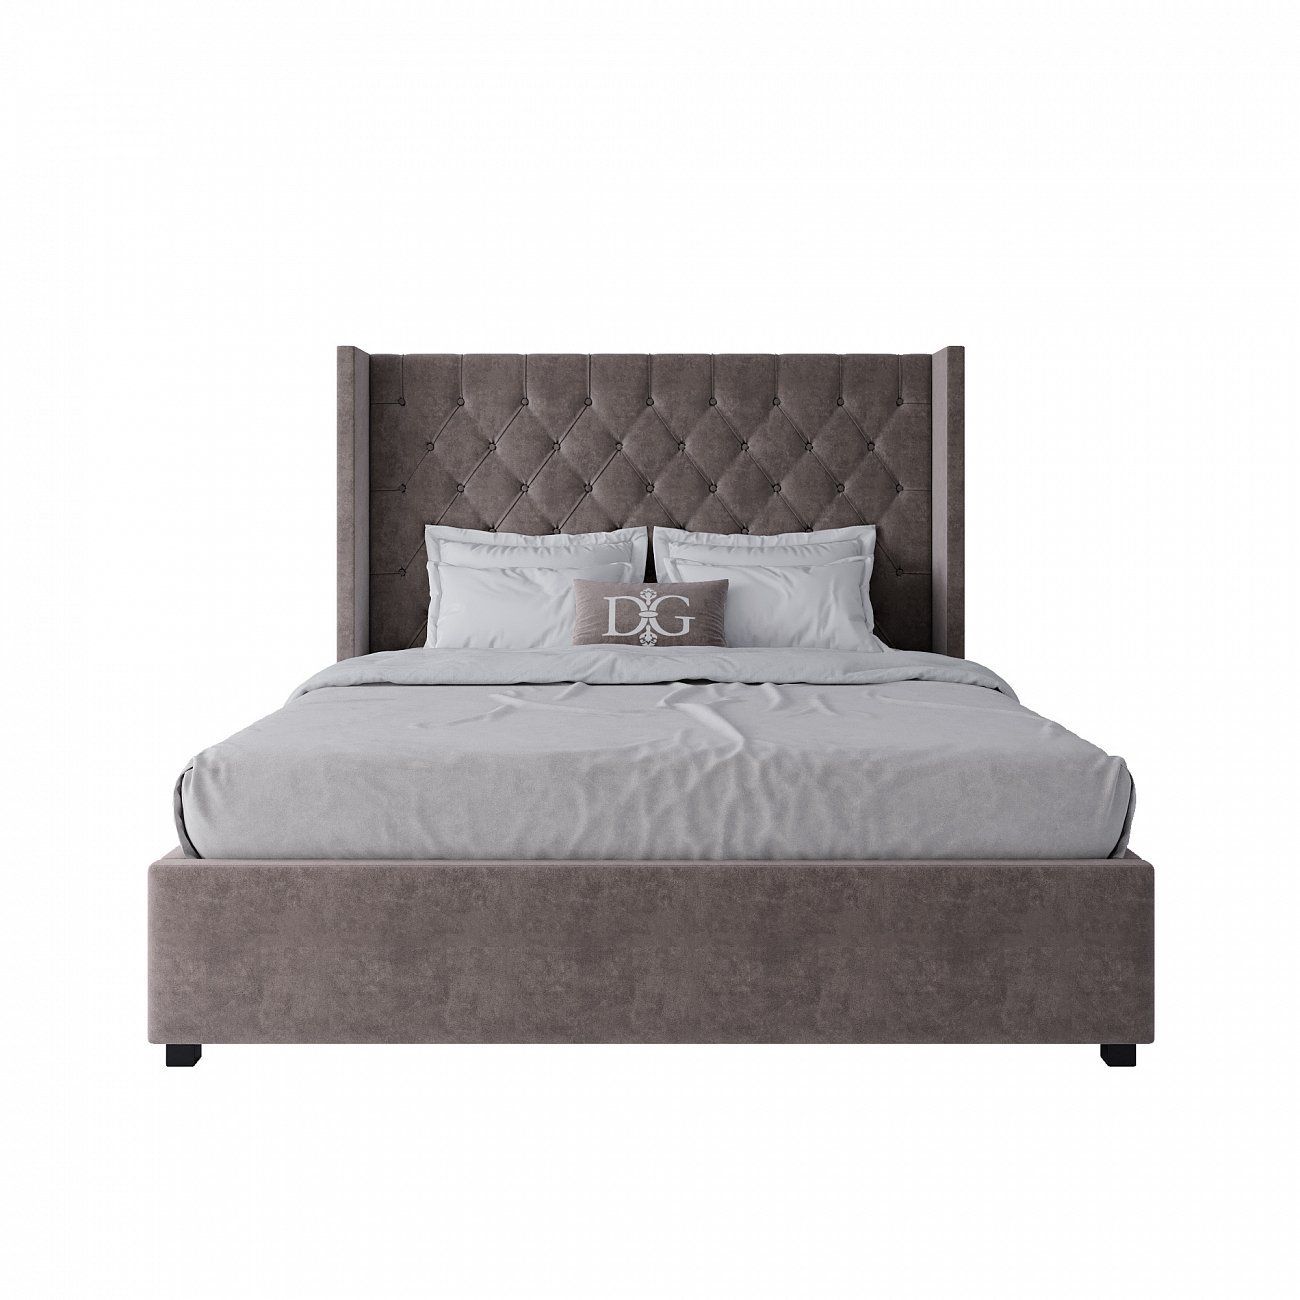 Кровать двуспальная 160х200 см серо-коричневая из велюра с каретной стяжкой без гвоздиков Wing-2